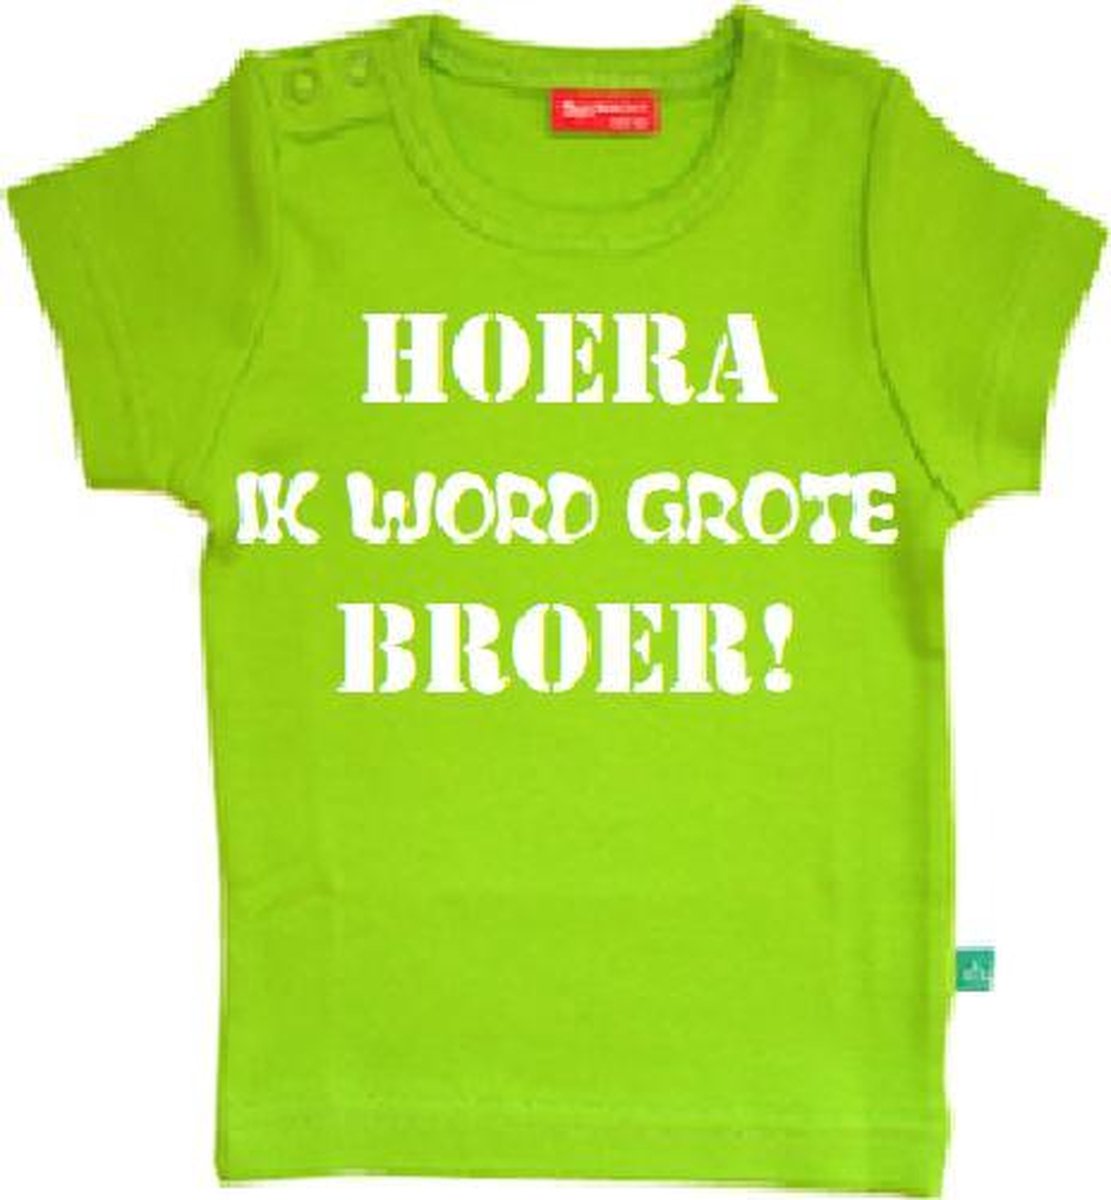 Drukkies T-shirt korte mouw T-shirt korte mouw | Hoera ik word grote broer! | lime groen | Jongens T-shirt Maat 74/80